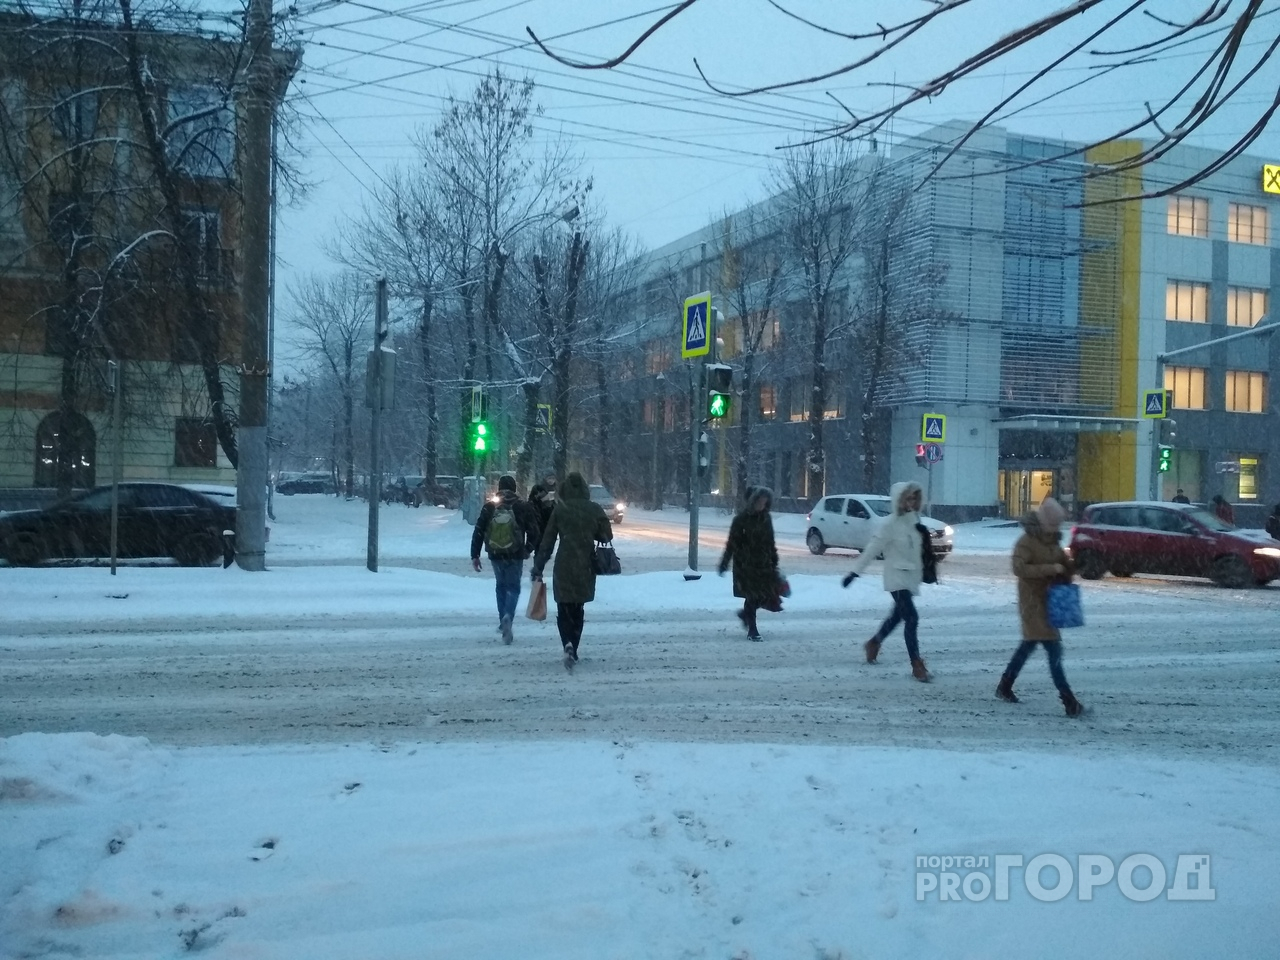 Рекордные пробки в 10 баллов: из-за снегопада встал Ярославль